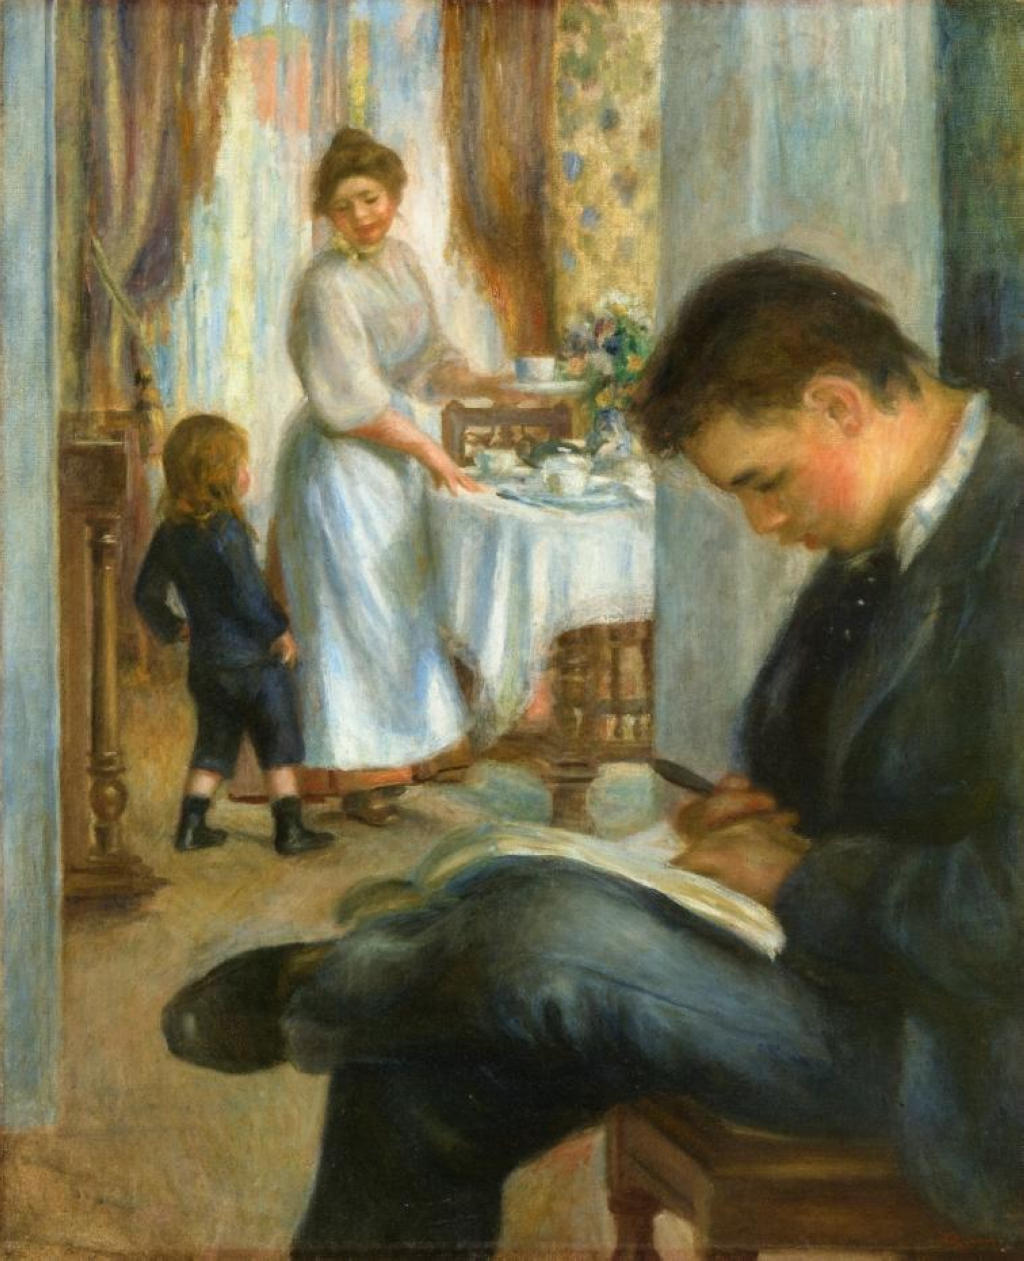 Breakfast at Berneval - Pierre-Auguste Renoir painting on canvas